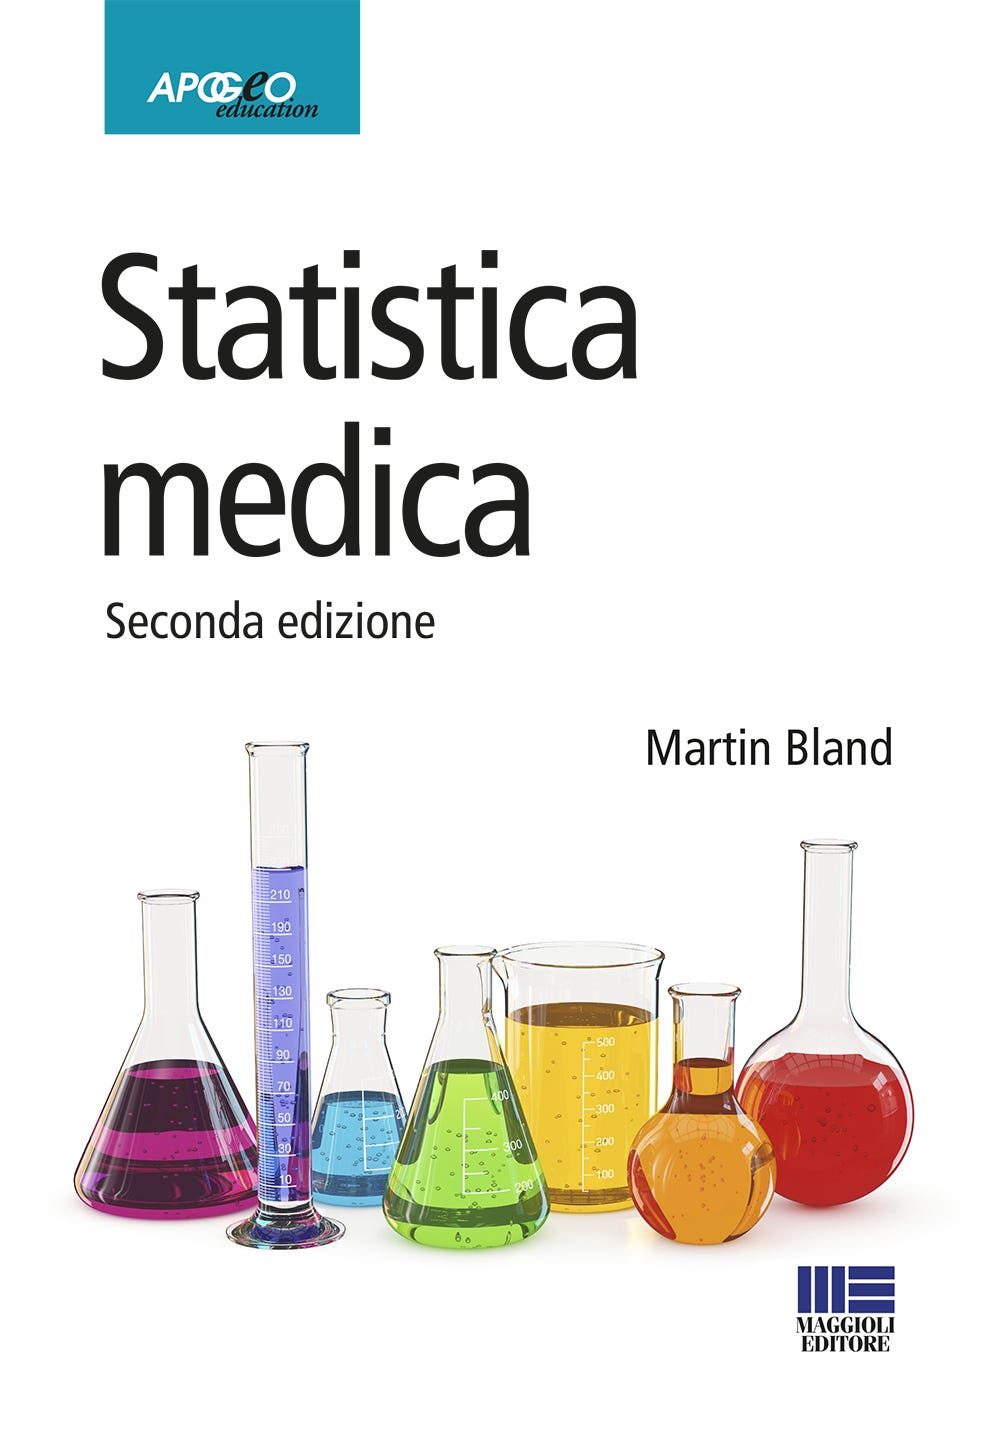 Statistica medica